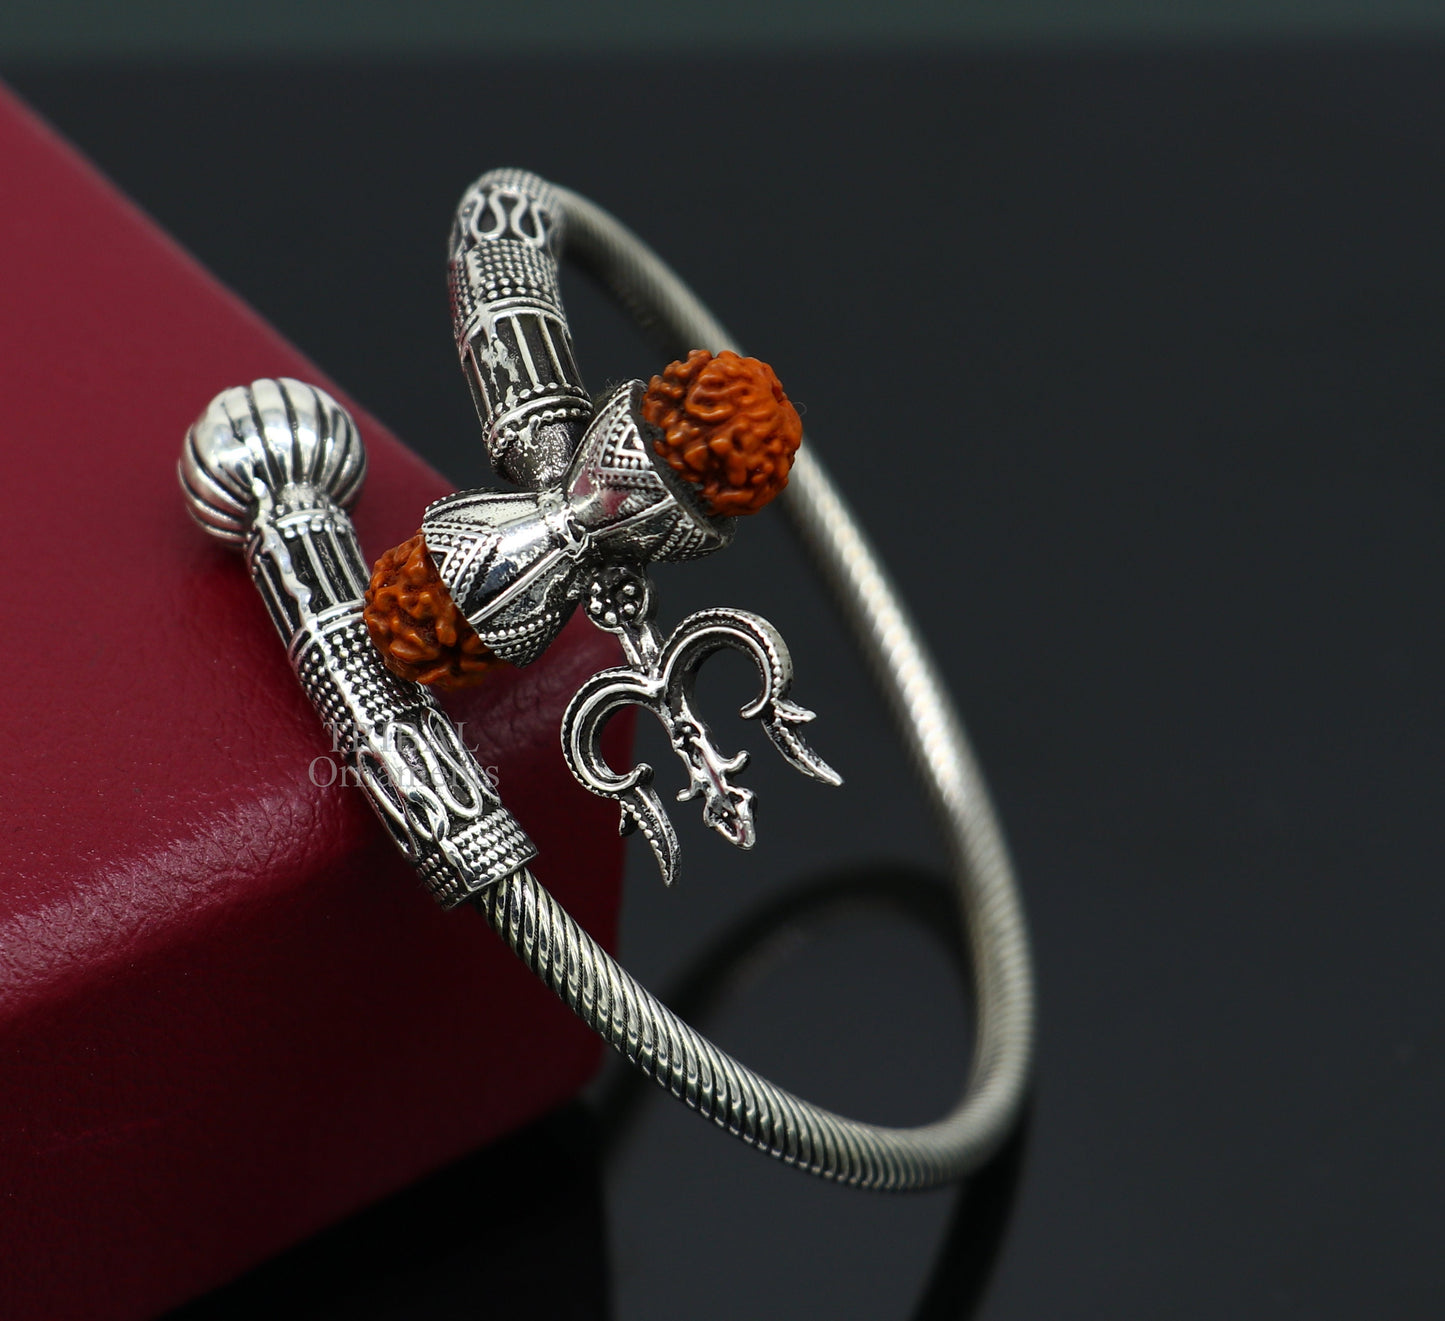 925 sterling silver handmade Shiva Trishul bangle bracelet Rudraksha kada, excellent Bahubali trident kada bracelet gift  for girl's nsk748 - TRIBAL ORNAMENTS